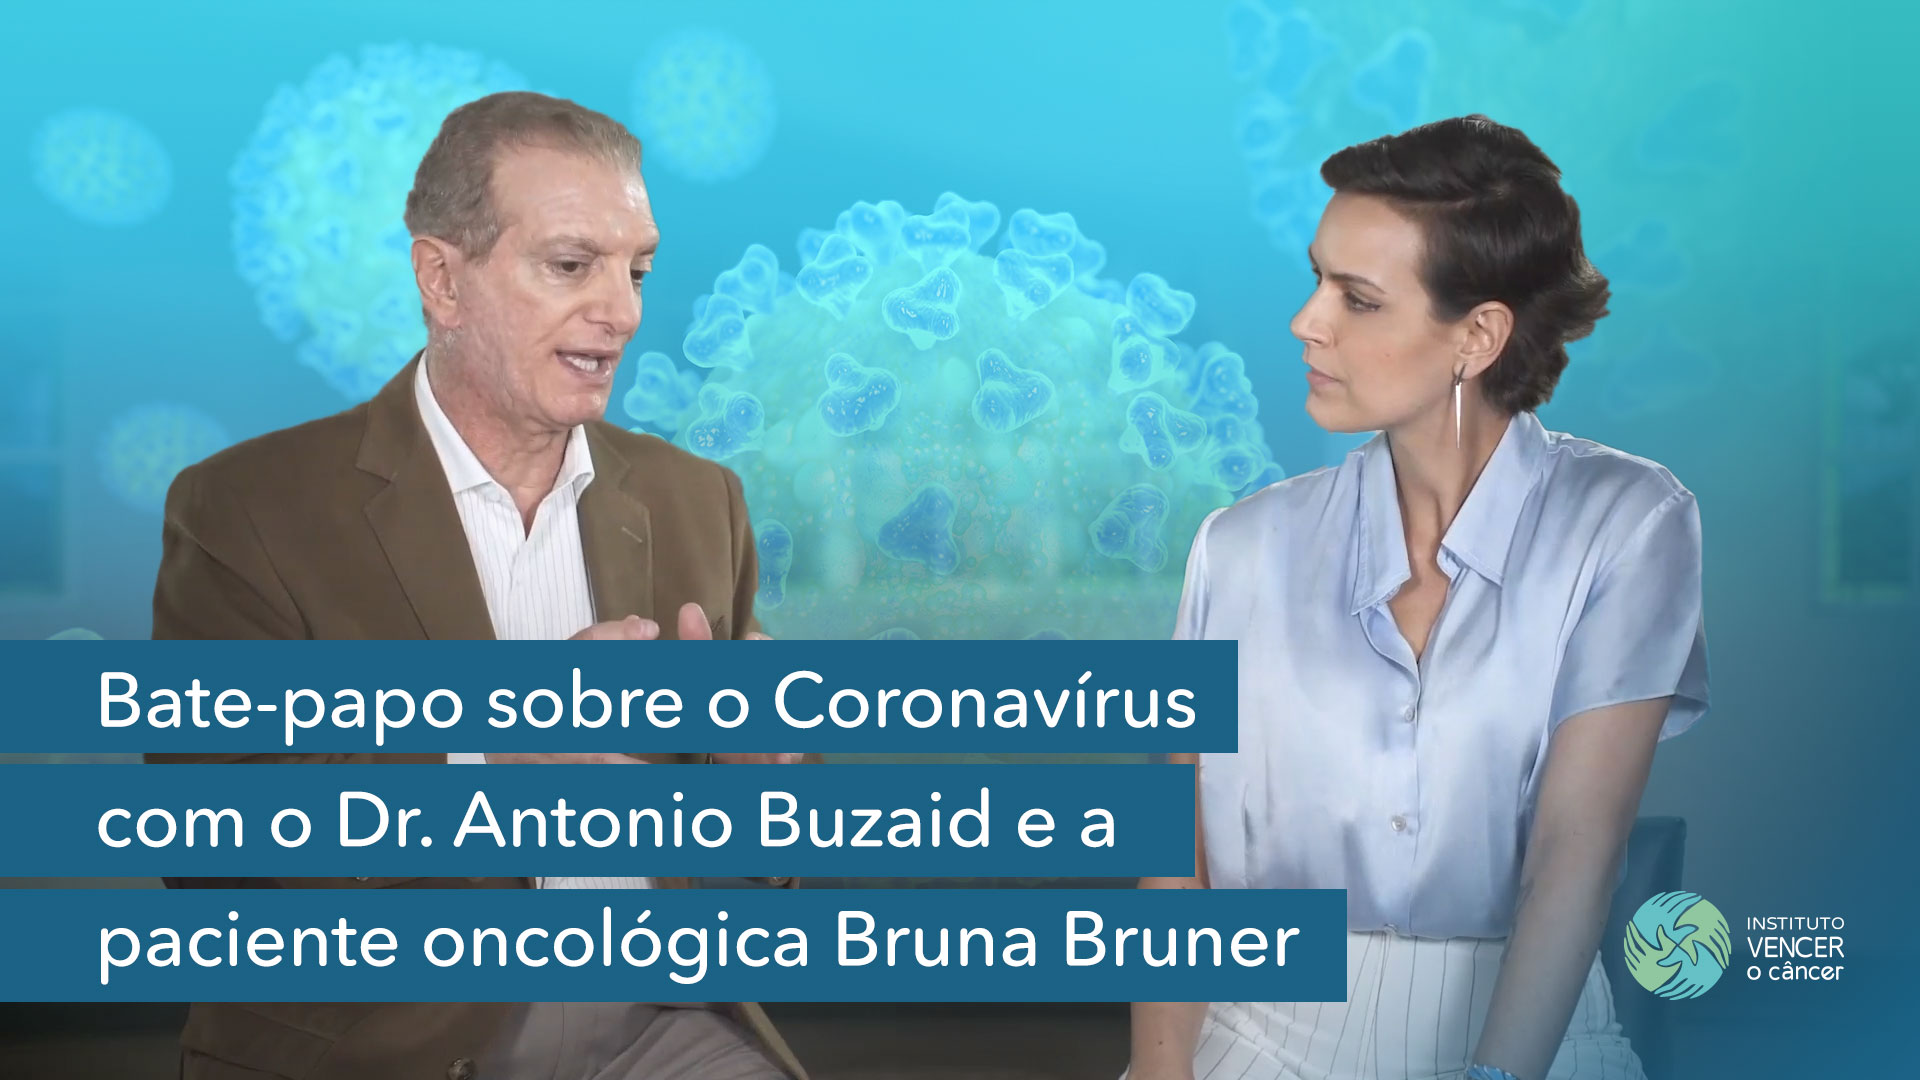 Bate-papo sobre o Coronavírus com o Dr. Antonio Buzaid e a paciente oncológica Bruna Bruner